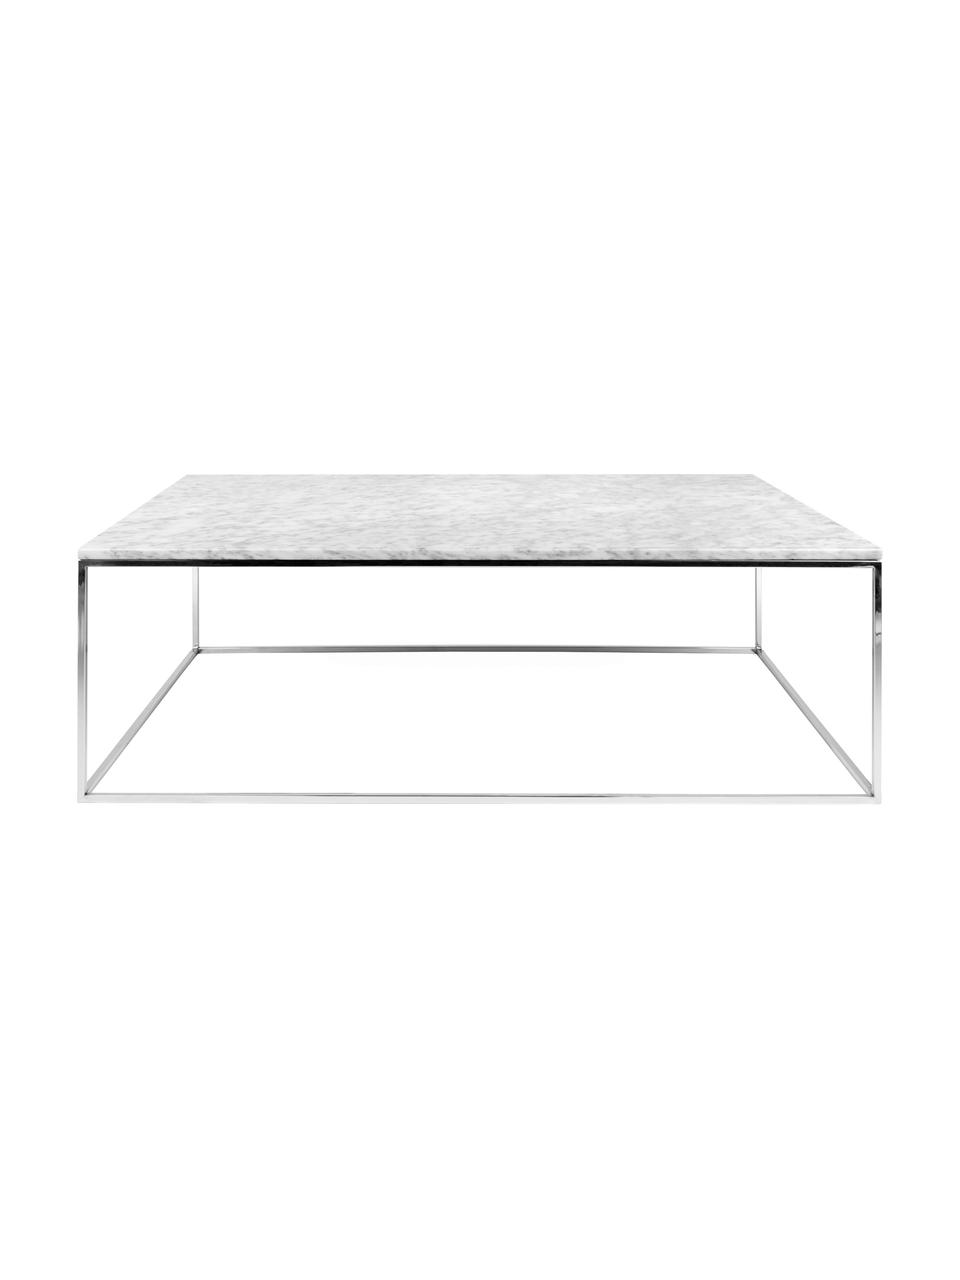 Marmor-Couchtisch Gleam, Tischplatte: Marmor, Gestell: Stahl, verchromt, Tischplatte: Weiß, marmoriert<br>Gestell: Chrom, 120 x 40 cm